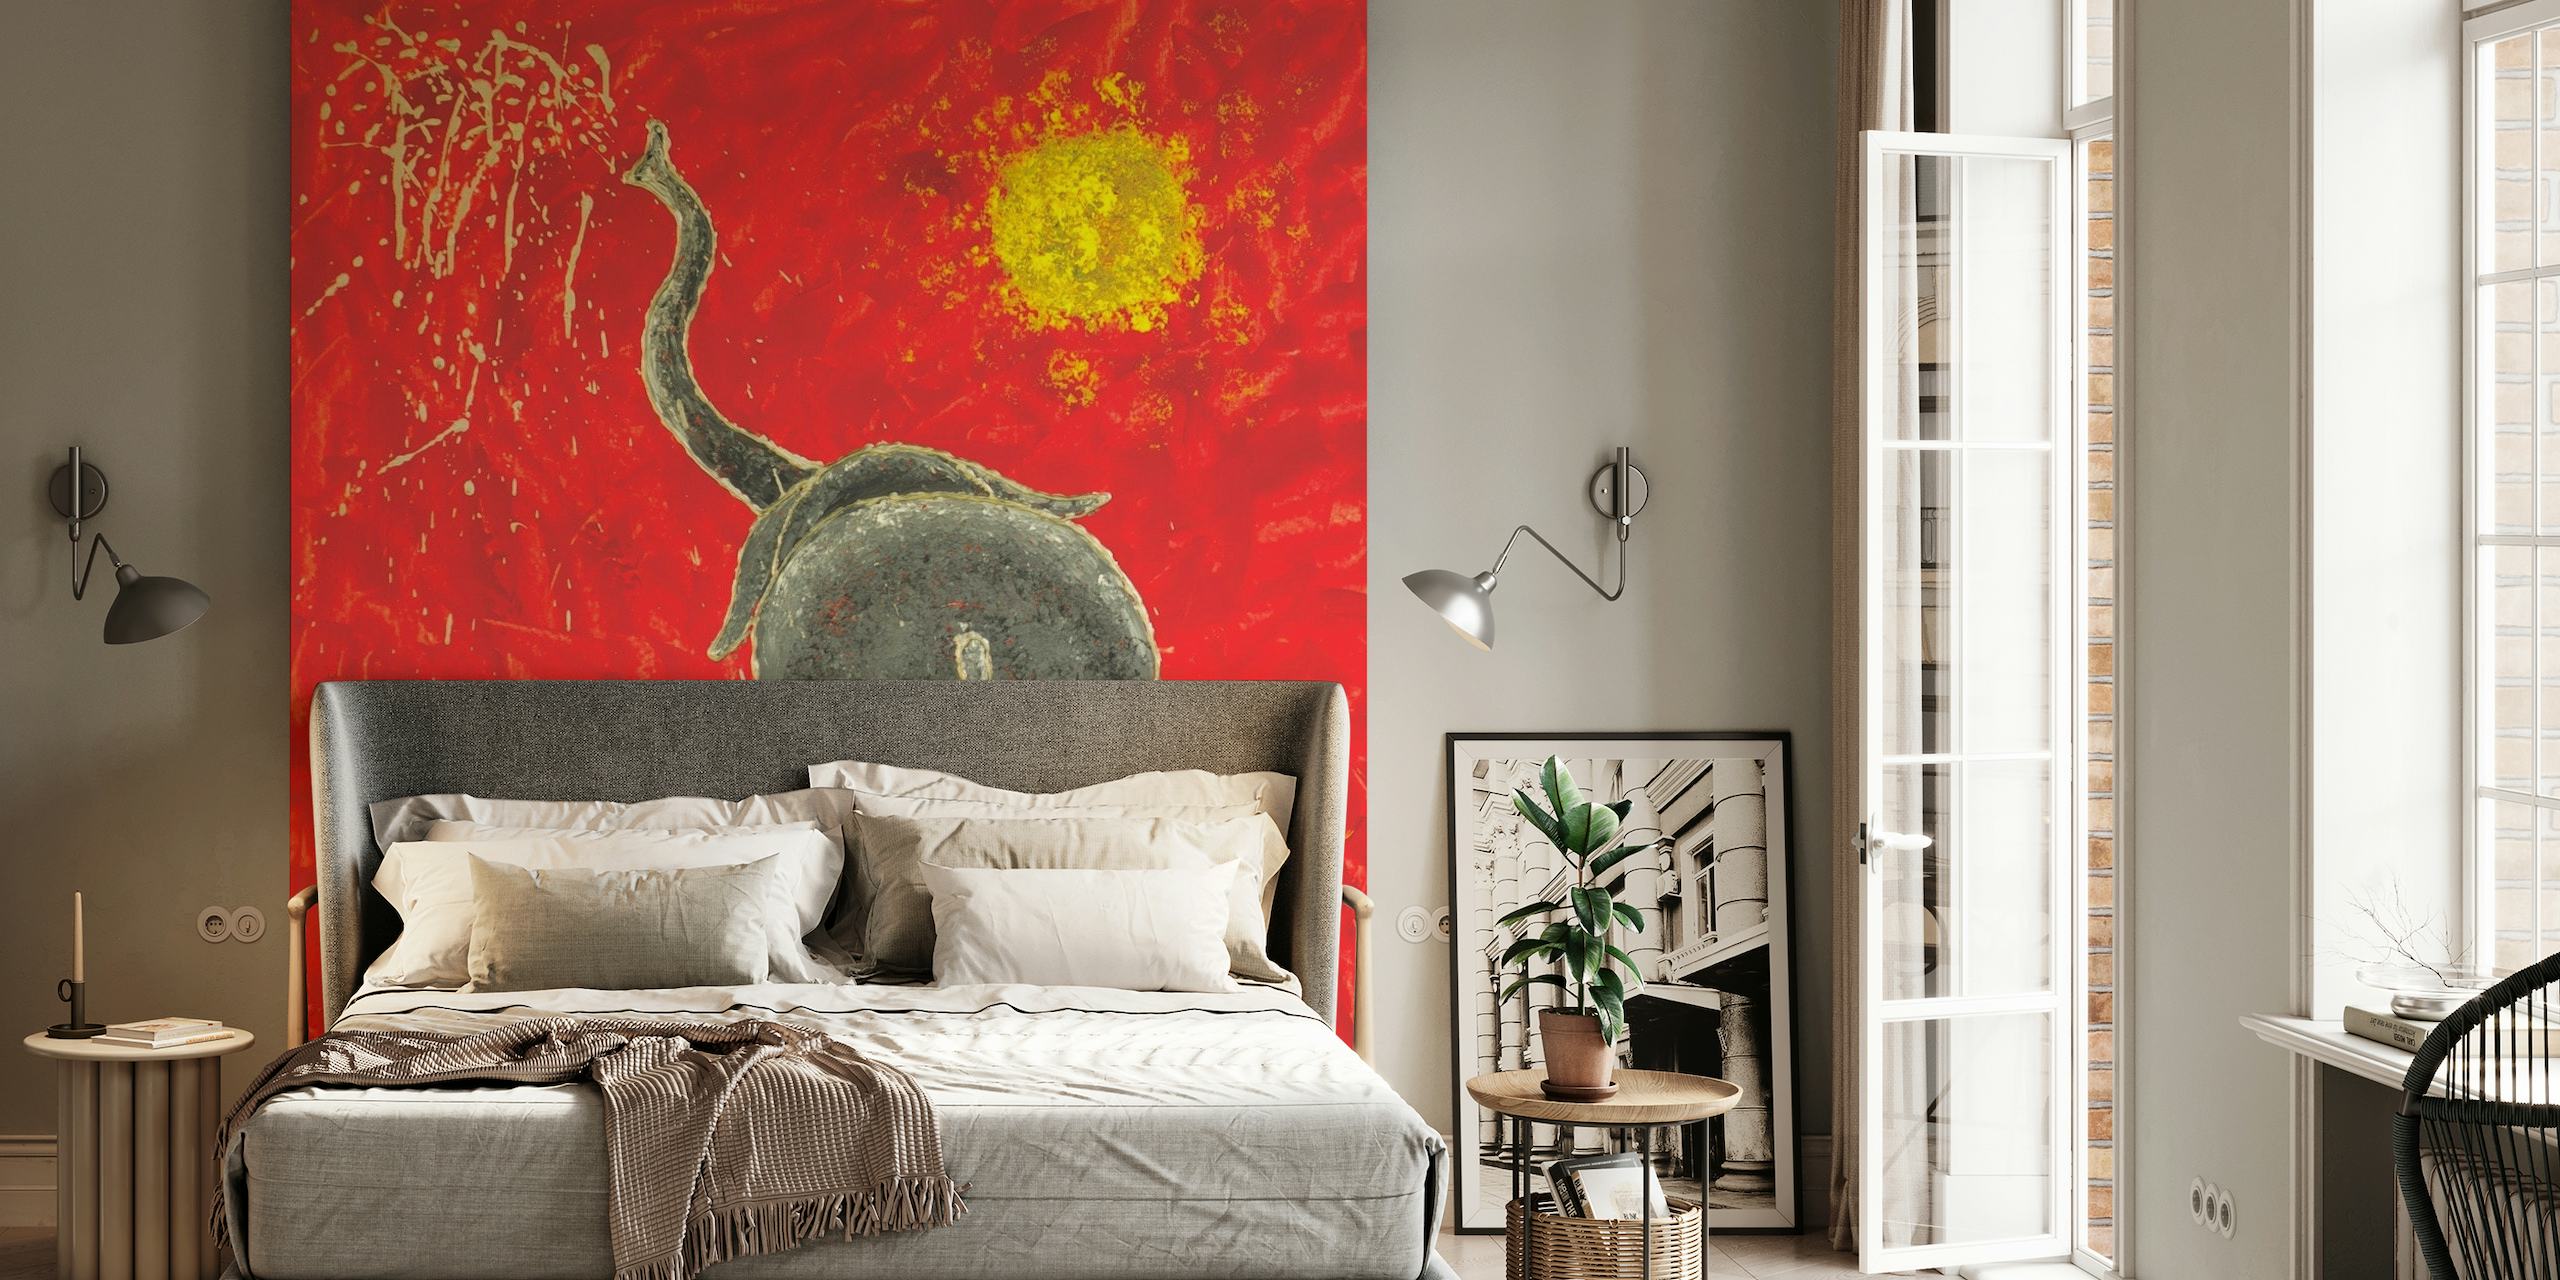 Kunstnerisk veggmaleri av en leken elefant i abstrakt stil med rød bakgrunn og gul sol